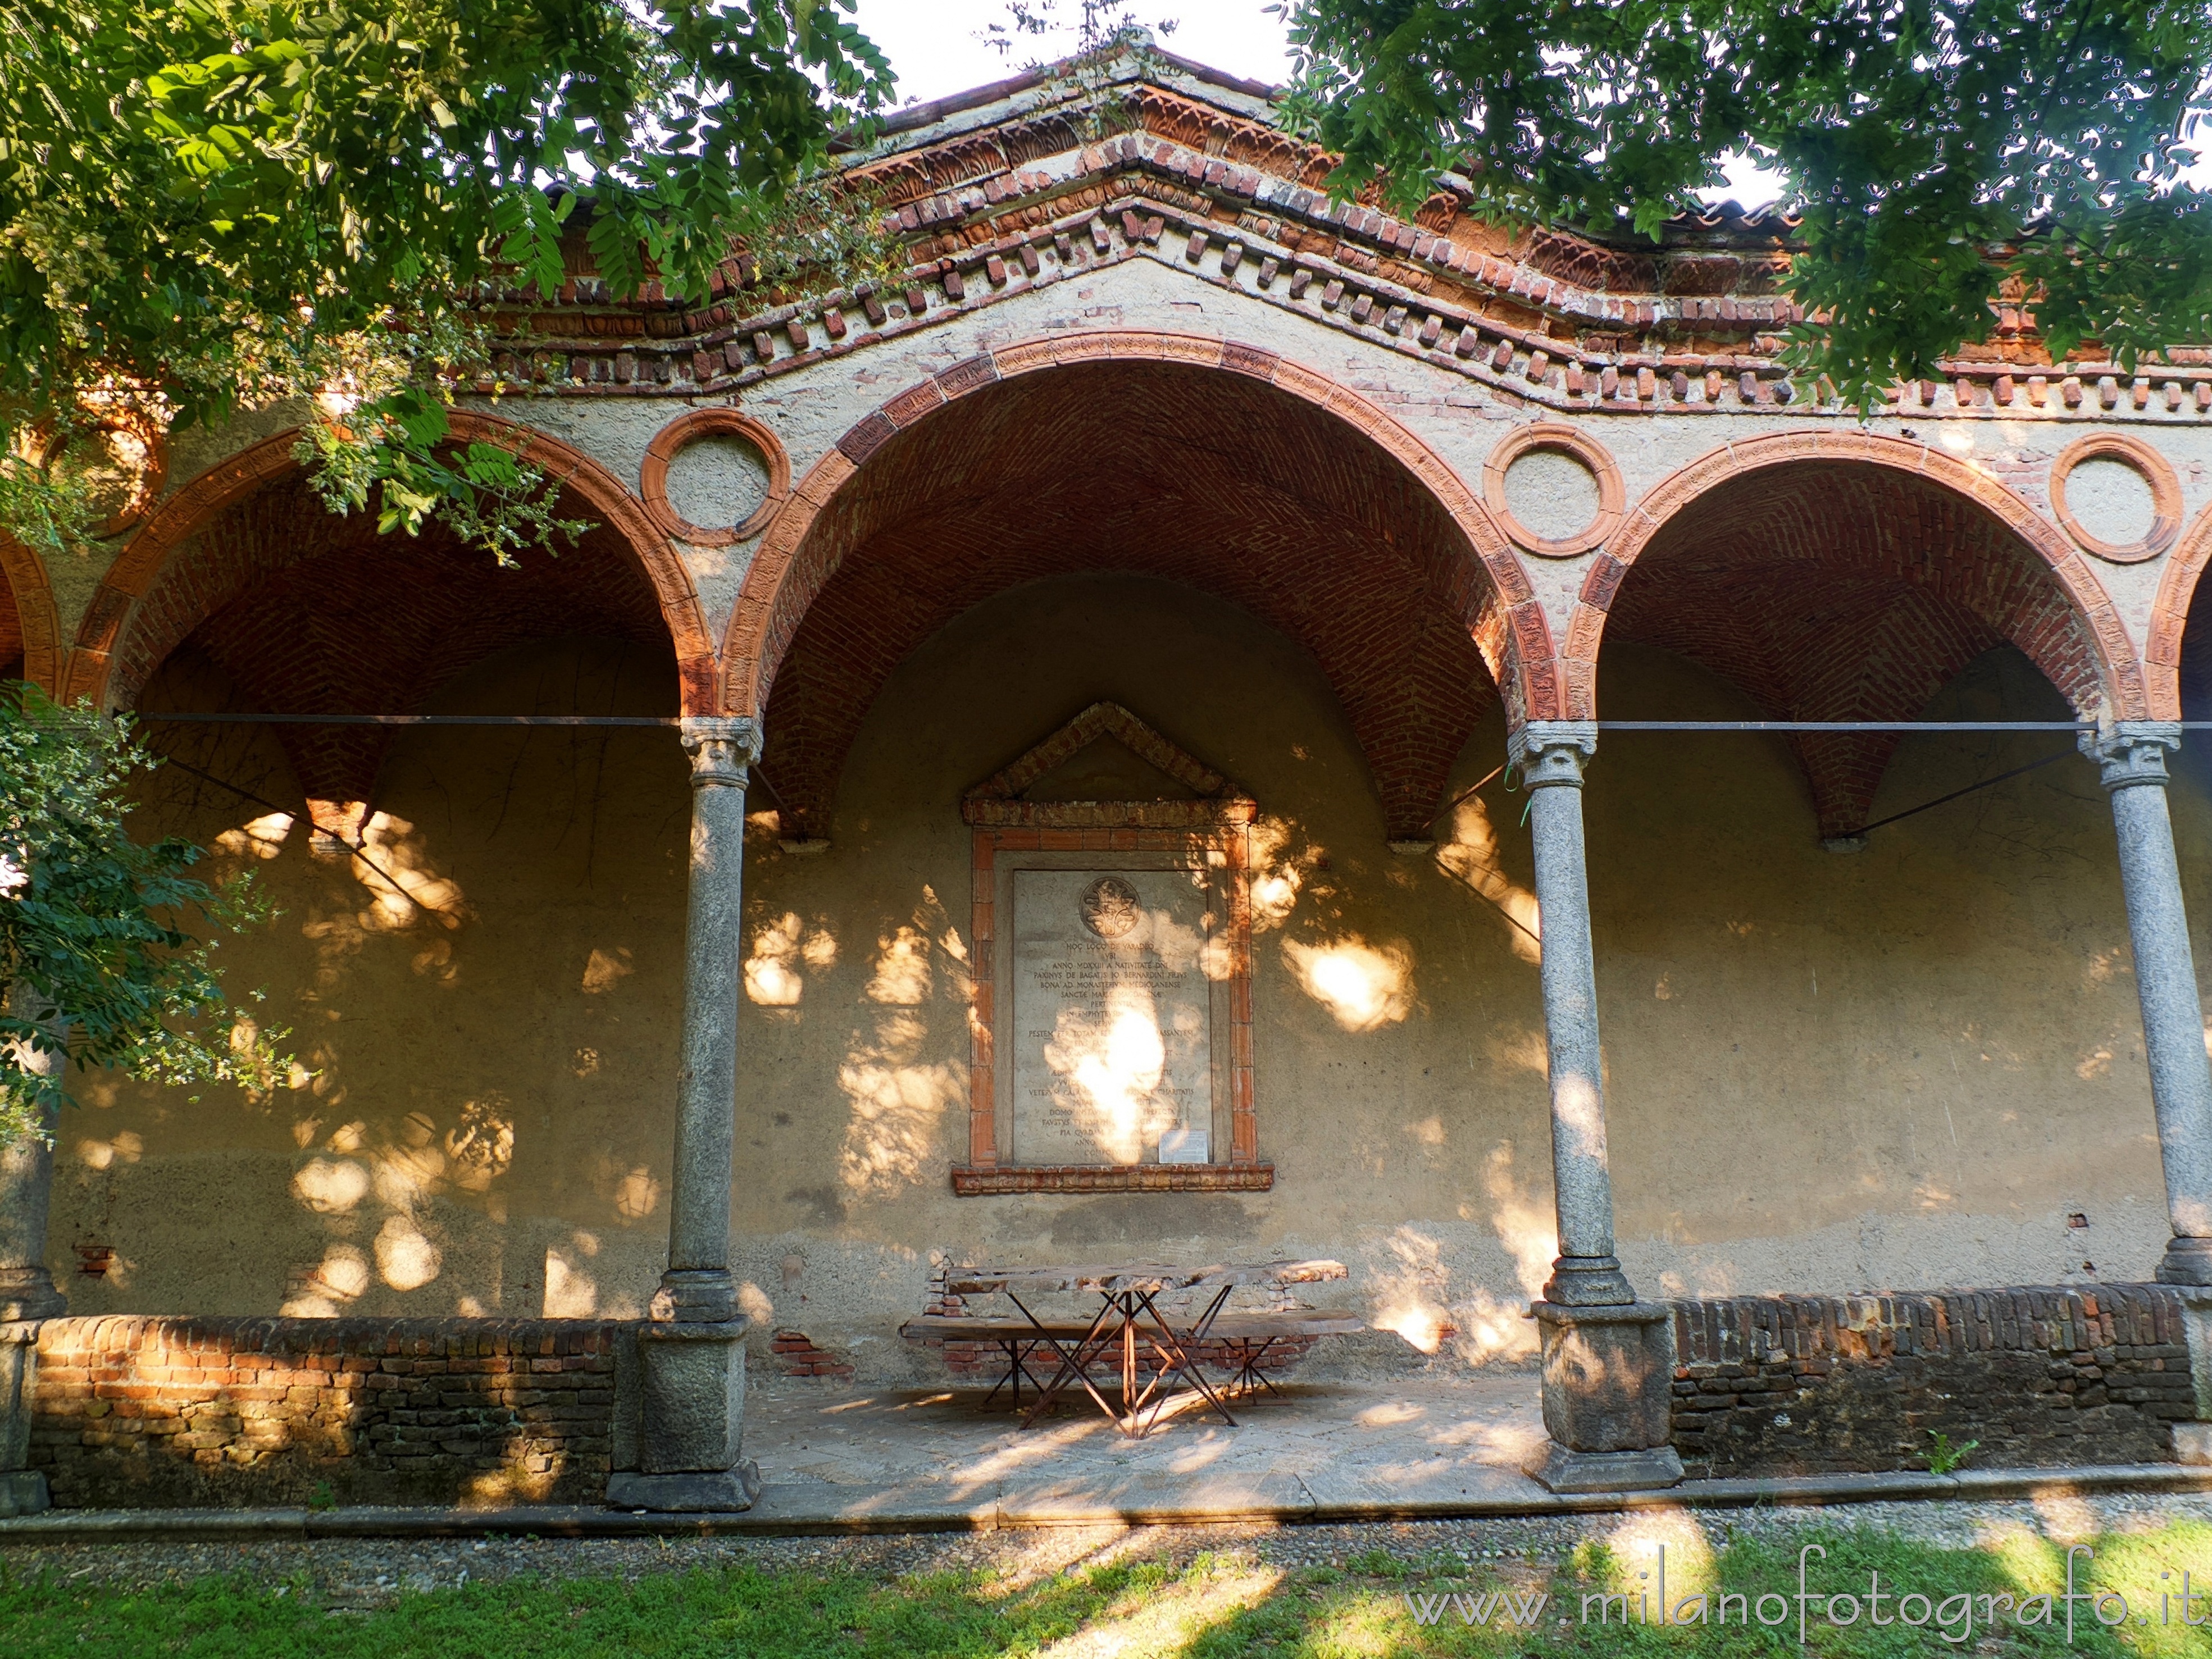 Varedo (Monza e Brianza, Italy): San Gregorio Gate of the Lazzaretto in the park of Villa Bagatti Valsecchi - Varedo (Monza e Brianza, Italy)